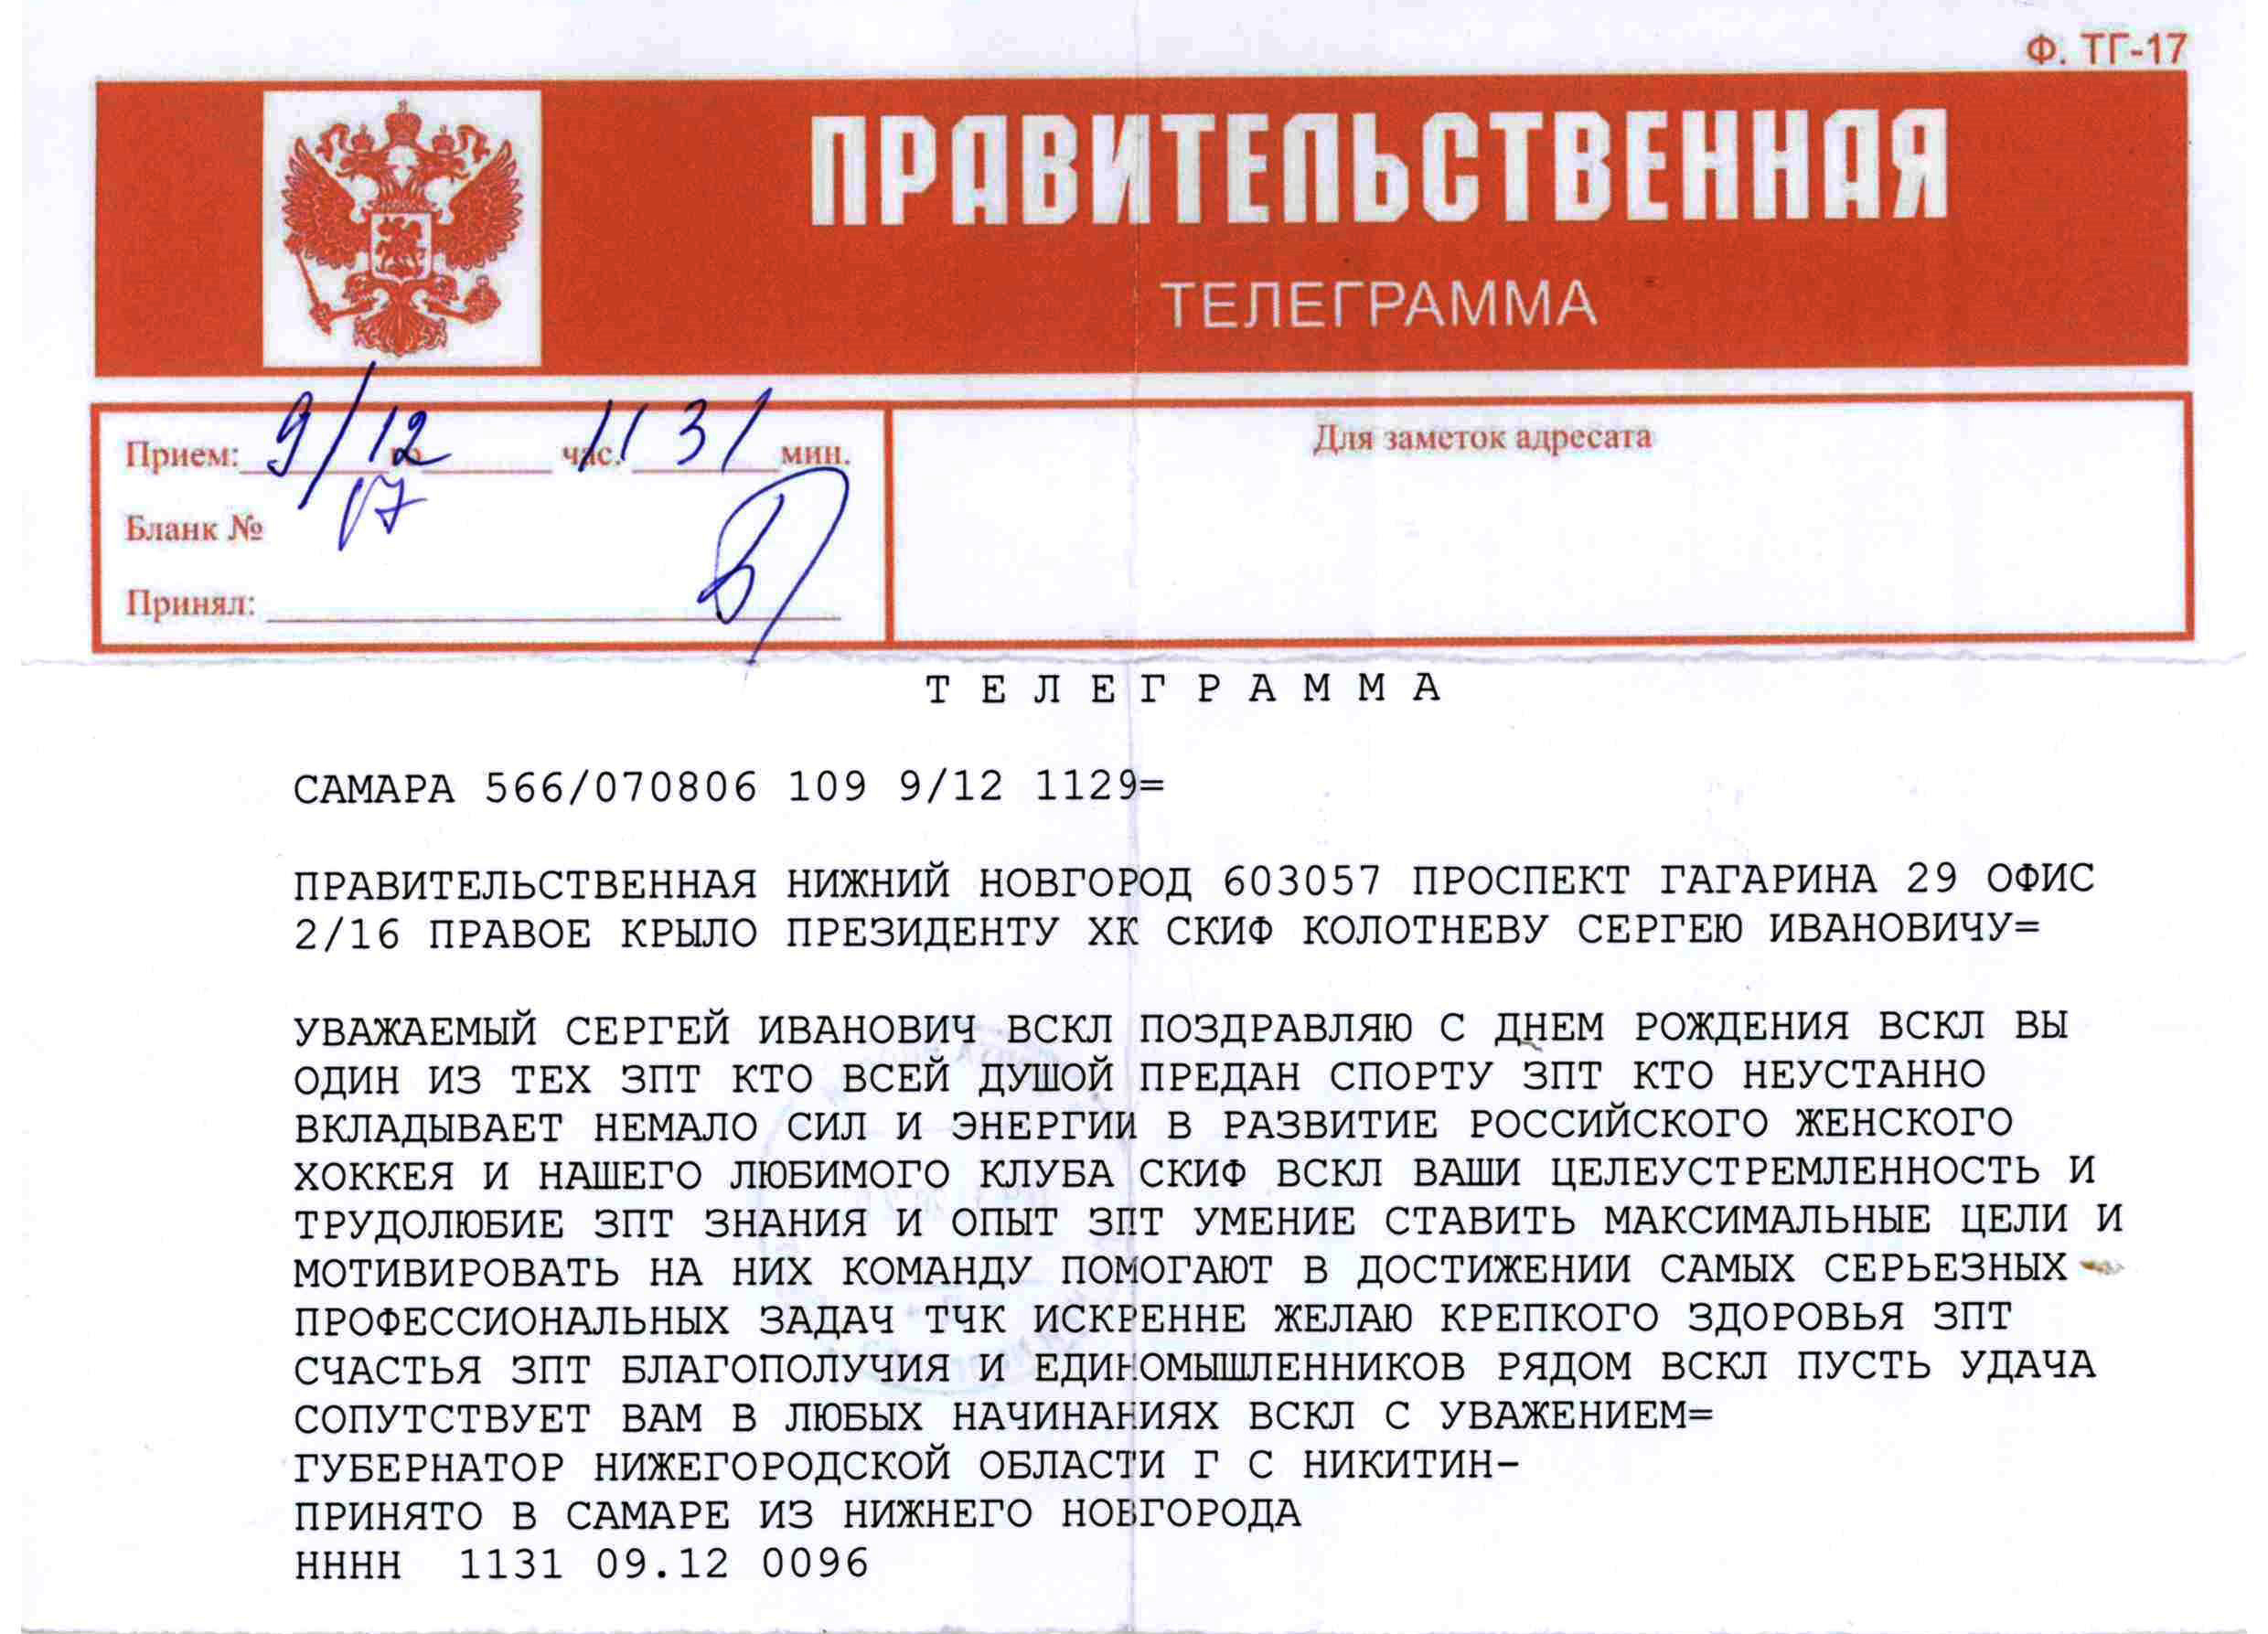 Телеграмма по телефону нижний новгород фото 103